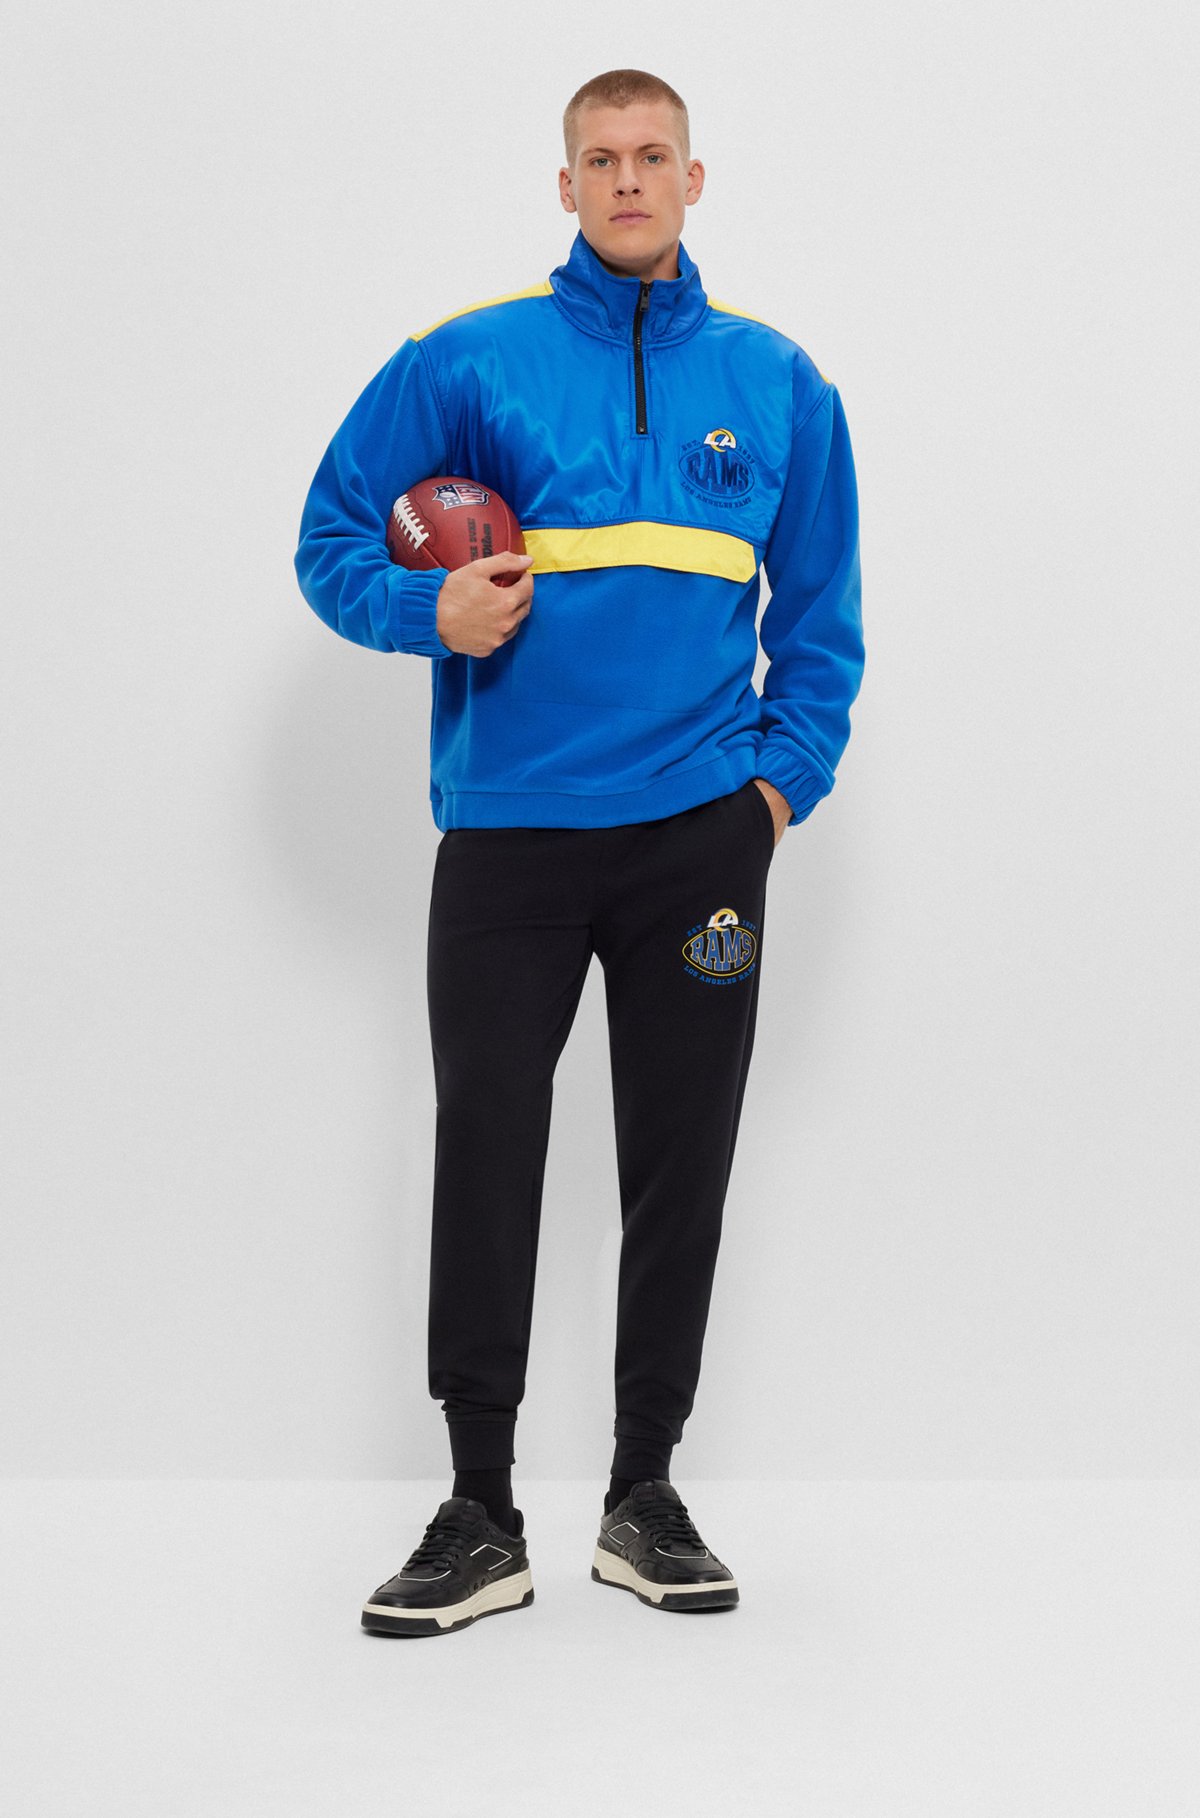  BOSS x NFL zip-neck sweatshirt with collaborative branding, Rams